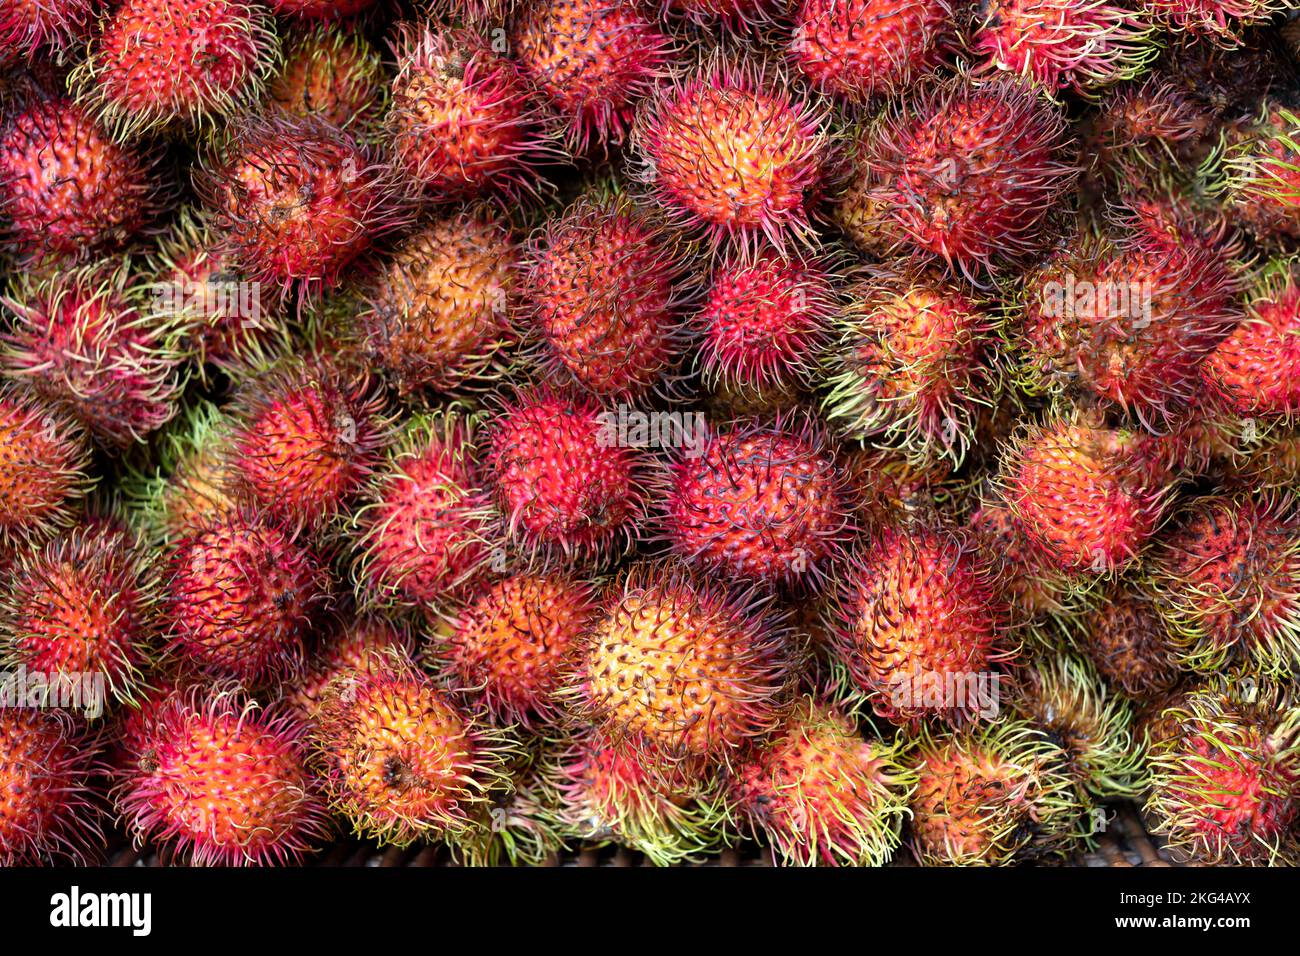 Une exposition de fruits Rambutan rouge frais Nephelium lapaceum les fruits tropicaux sont exposés et en vente sur un marché britannique. Riche en antioxydants, nutriments Banque D'Images